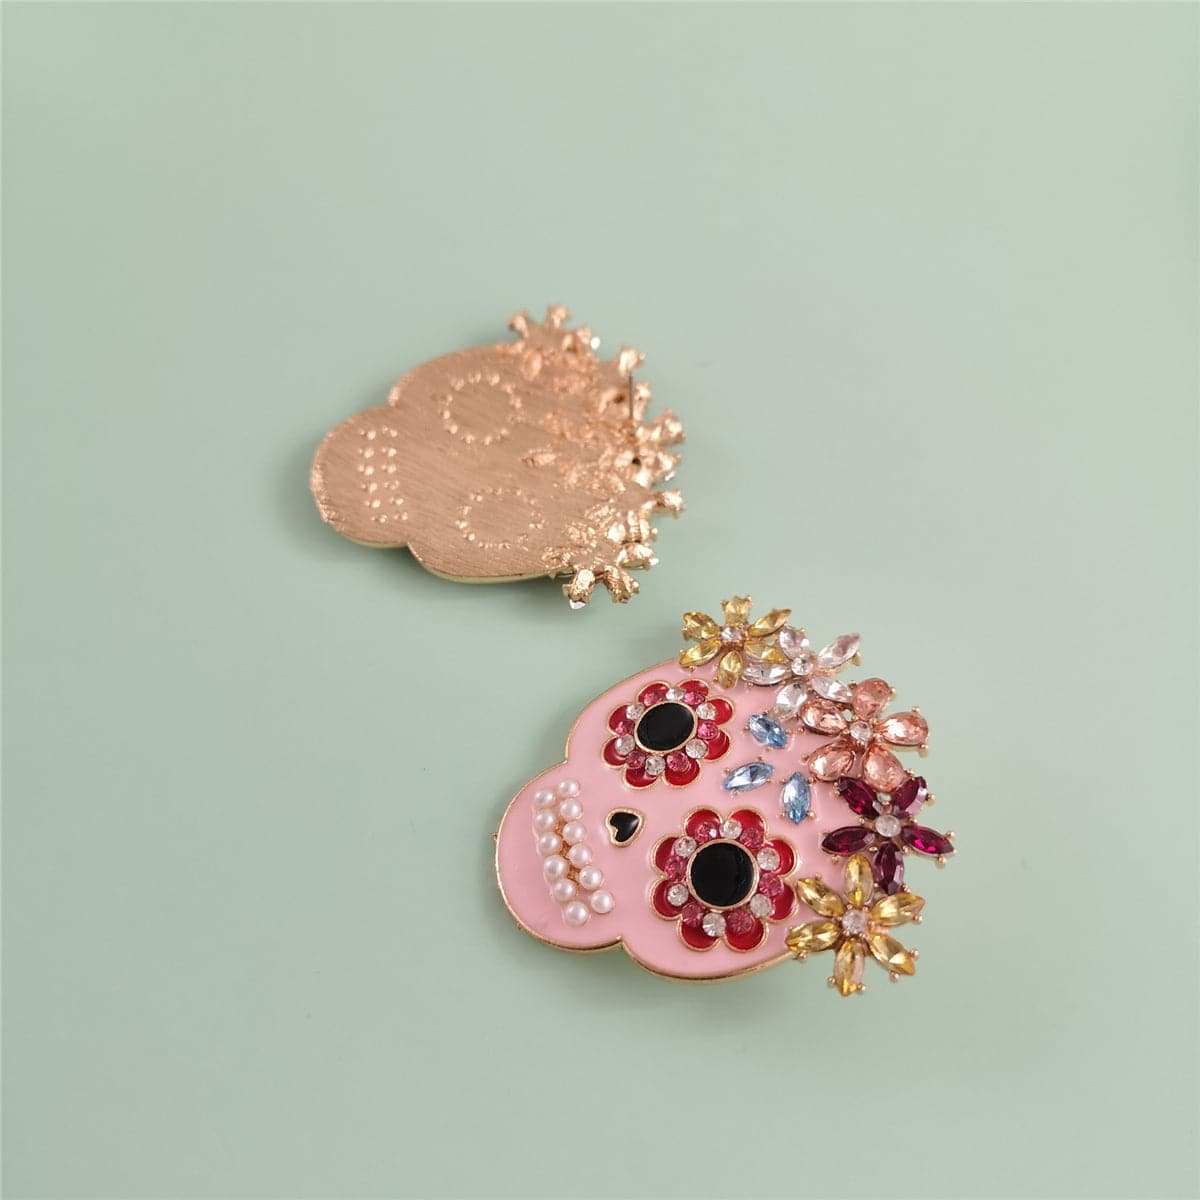 Pearl & Cubic Zirconia Sugar Skull Stud Earrings